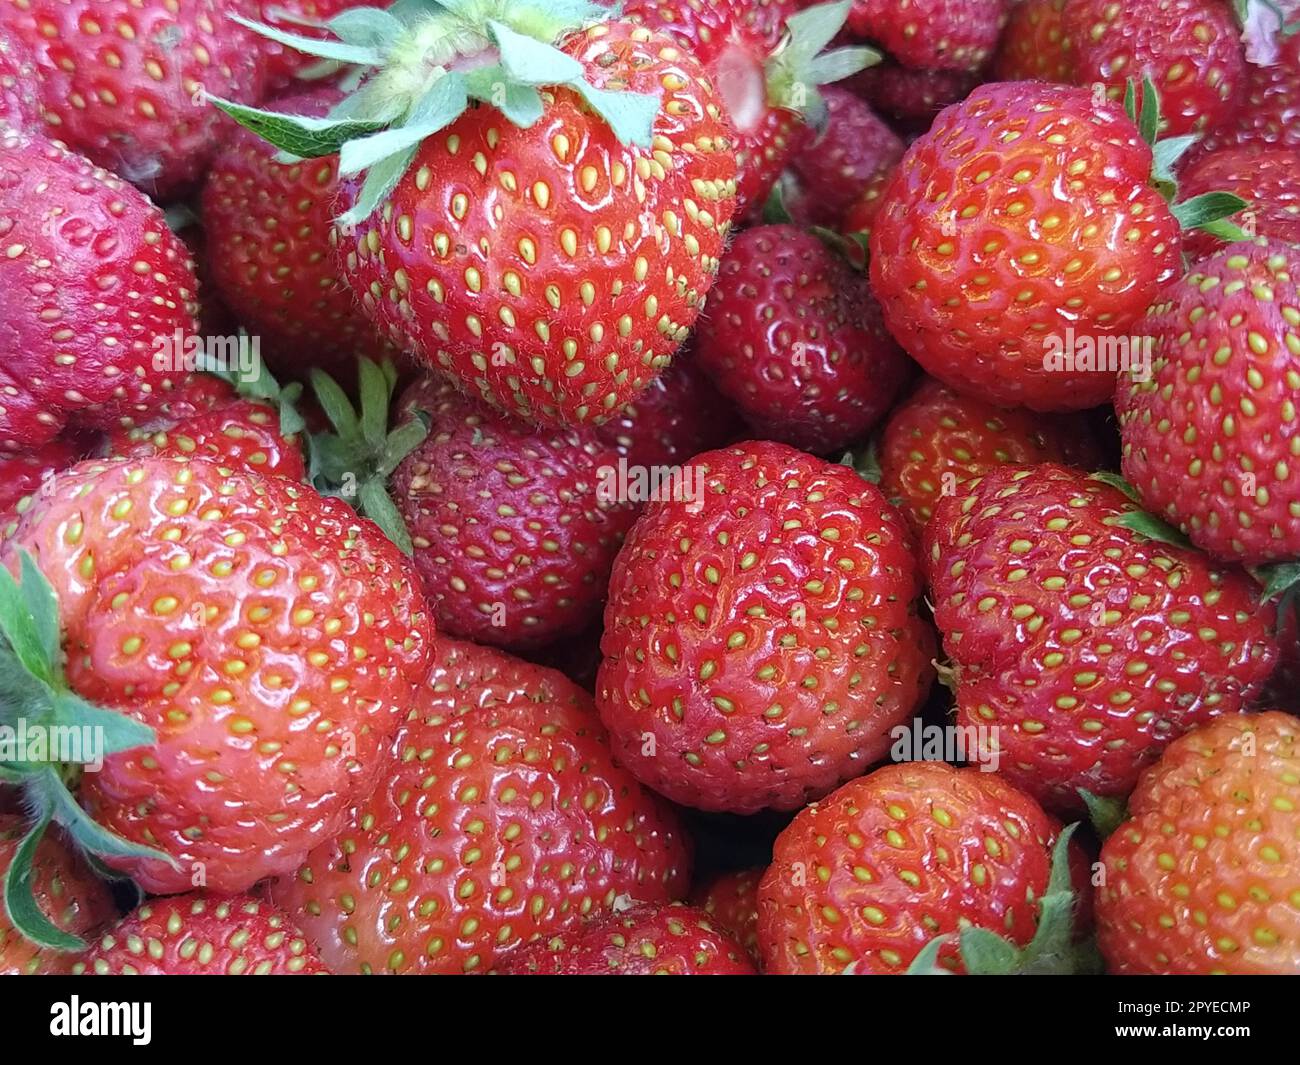 Wunderschöne, glatte, rote, reife Erdbeertäfelung. Viele Erdbeeren mit grünen Blättern. Vegetarische Speisen voller Vitamine, Mineralien und Nährstoffen. Gartenerdbeeren im Laden. Stockfoto